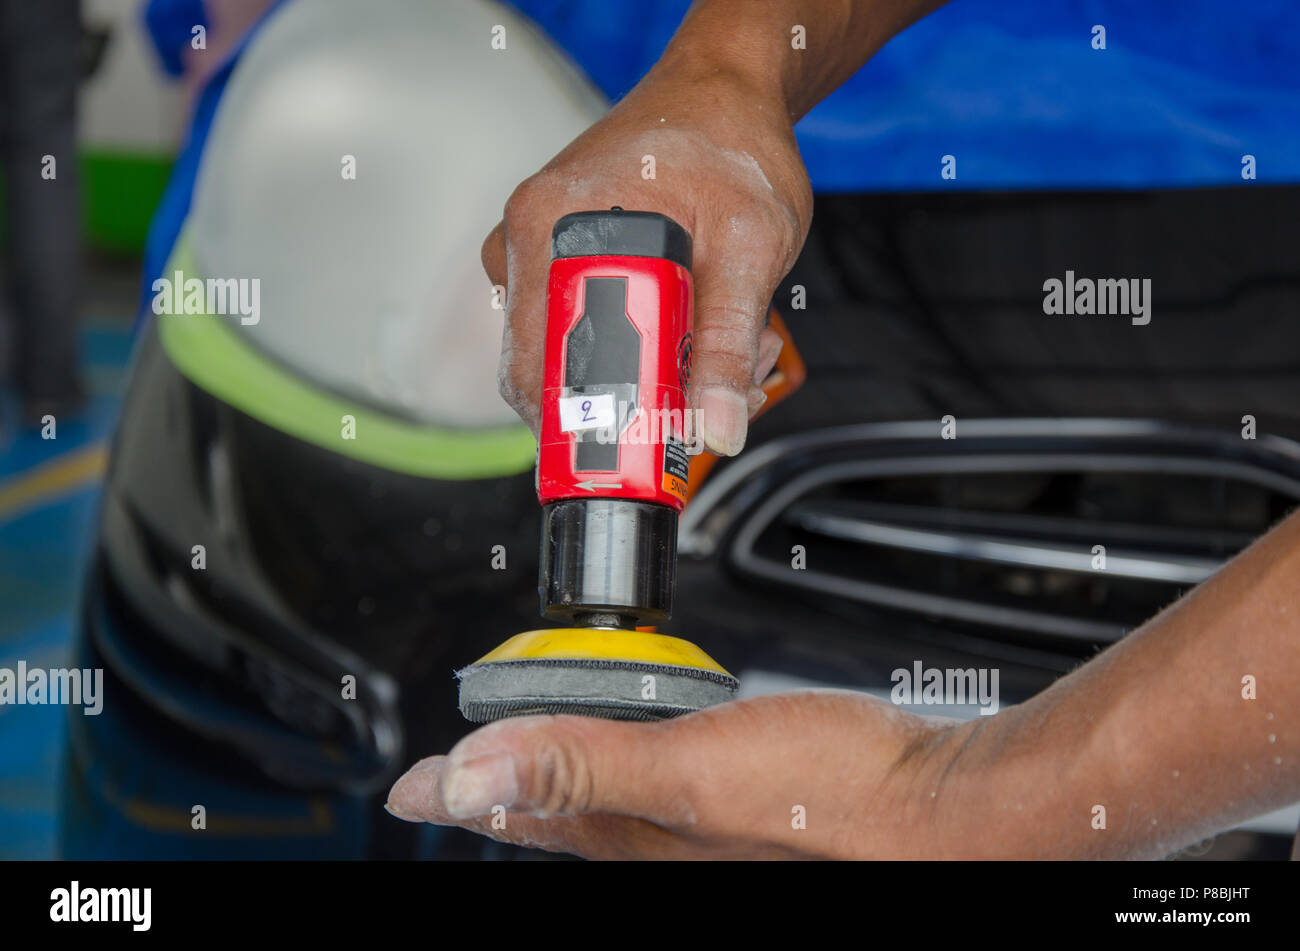 Mann hält eine poliermaschine Auto Scheinwerfer Stockfotografie - Alamy